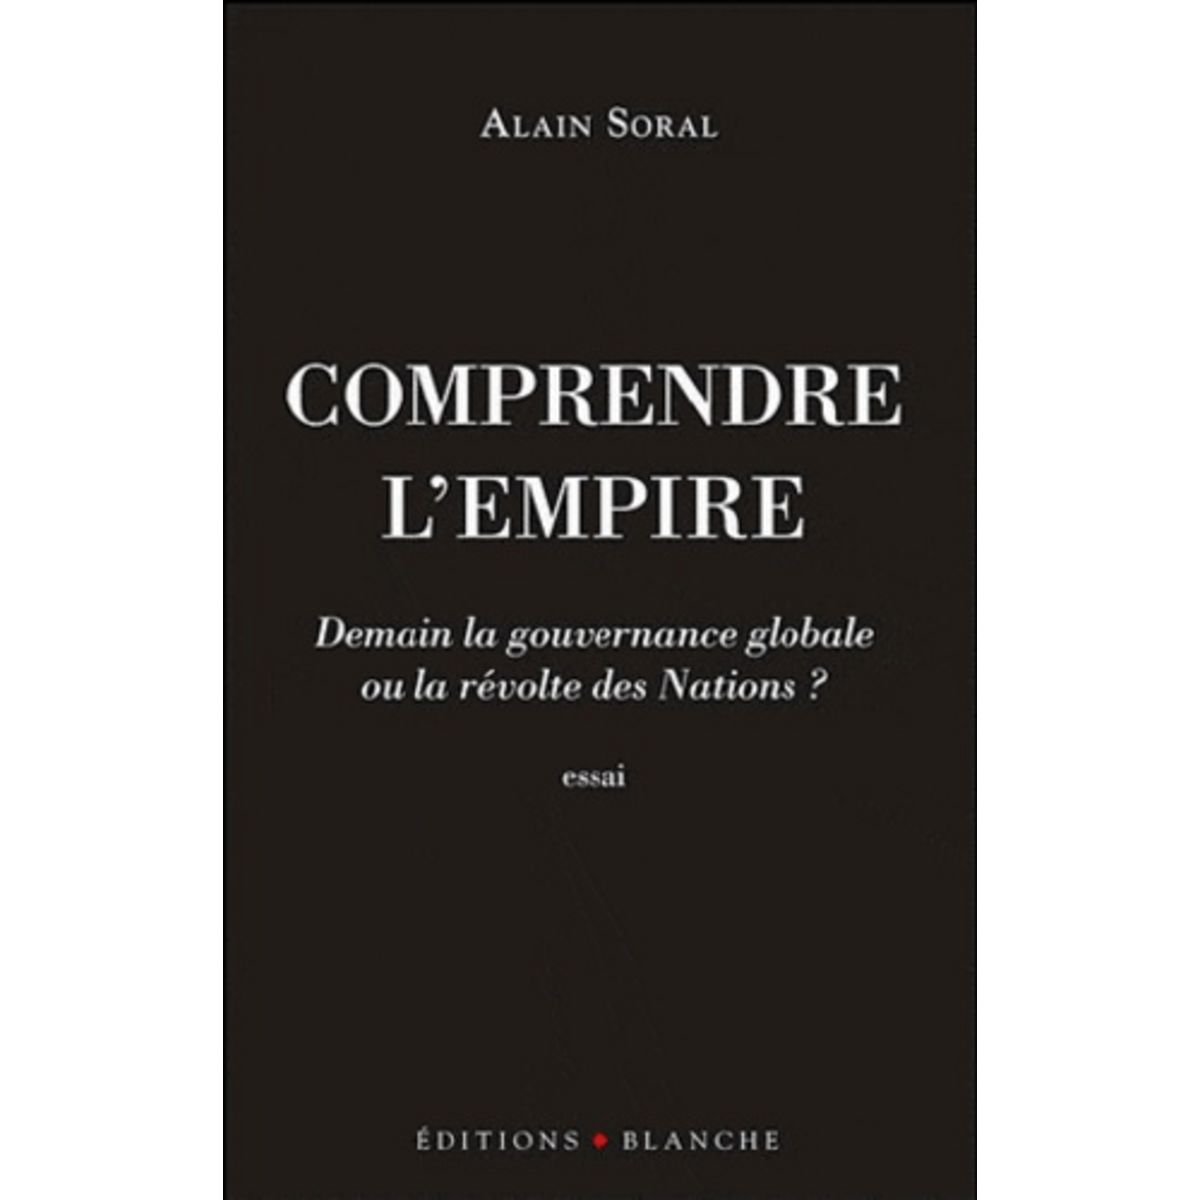  COMPRENDRE L'EMPIRE. DEMAIN LA GOUVERNANCE GLOBALE OU LA REVOLTE DES NATIONS ?, Soral Alain